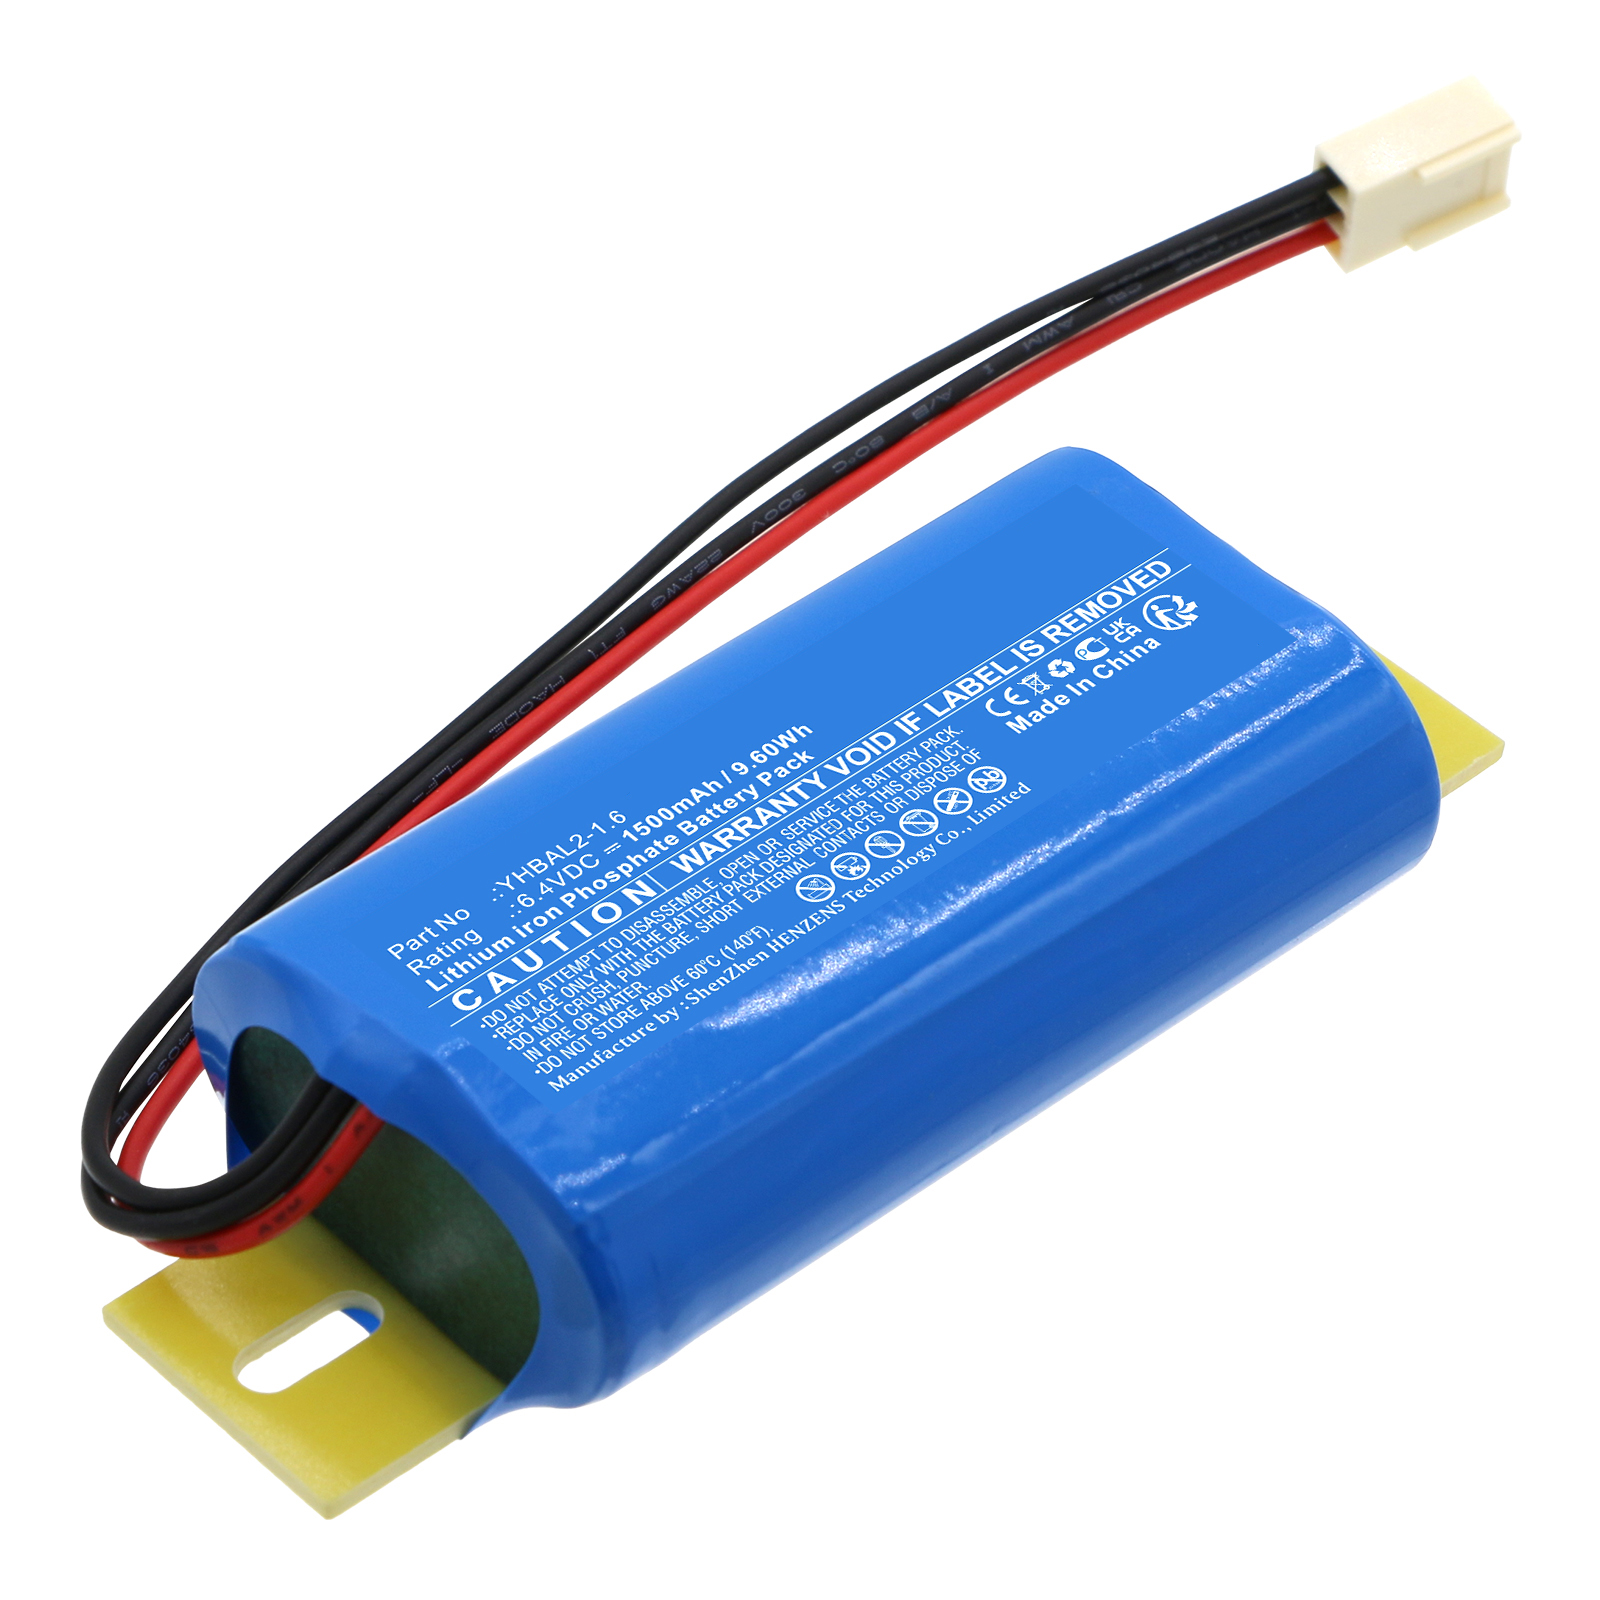 Synergy Digital Emergency Lighting Battery, Compatible with Streamer YHBAL2-1.6 Emergency Lighting Battery (LiFePO4, 6.4V, 1500mAh)